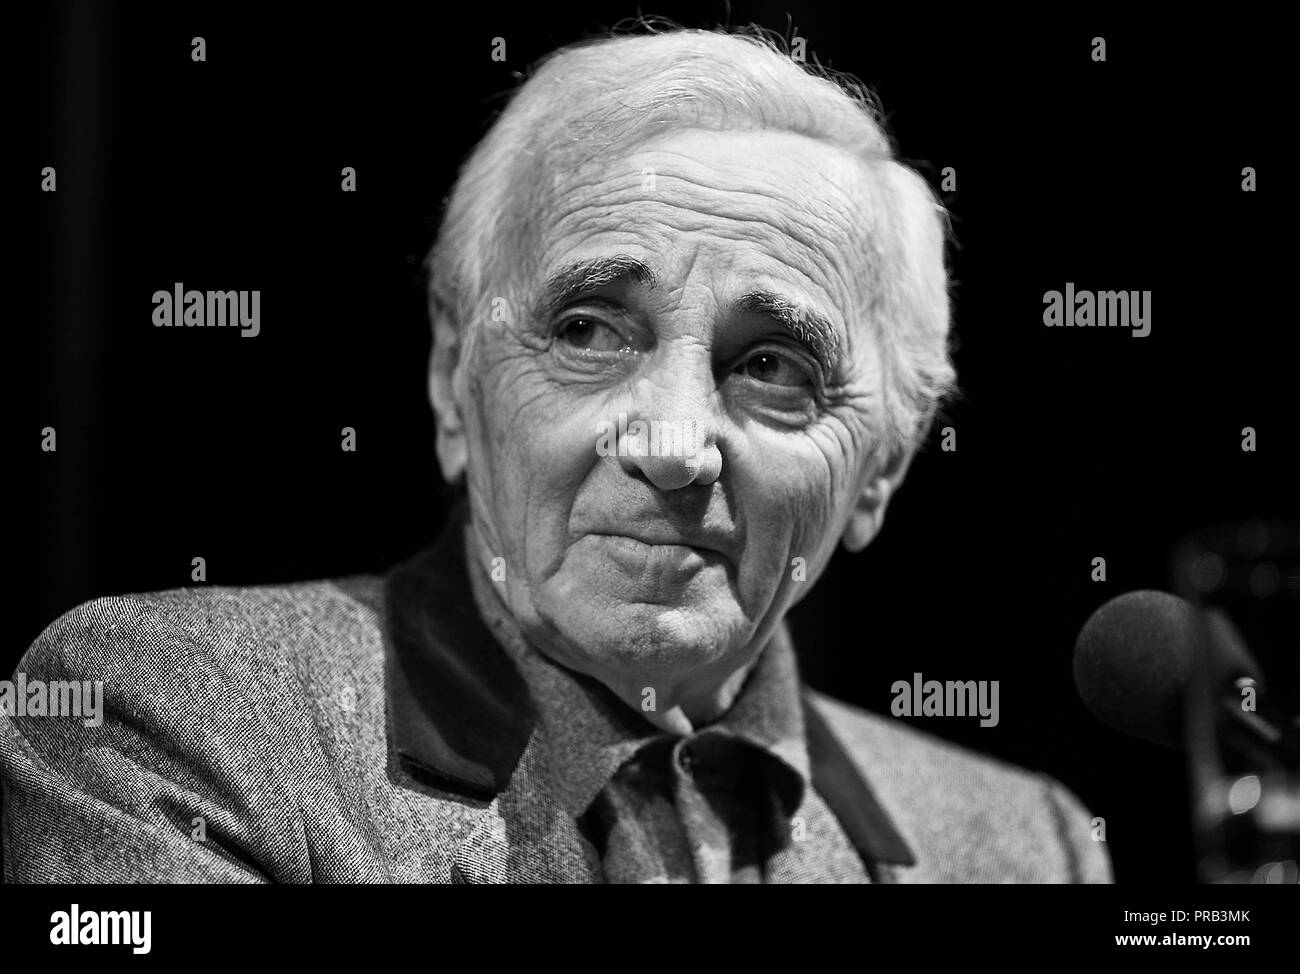 Colonia, Deutschland. 01 ott 2018. Charles Aznavour morì all'età di 94 in Provenza. Archivio fotografico; Charles Aznavour, FRA/BRACCIO, chansonnier, ritratti, ritratto, durante una lettura durante il festival letterario Lit.Colonia il 17.03.2011 in Koeln | Utilizzo di credito in tutto il mondo: dpa/Alamy Live News Foto Stock